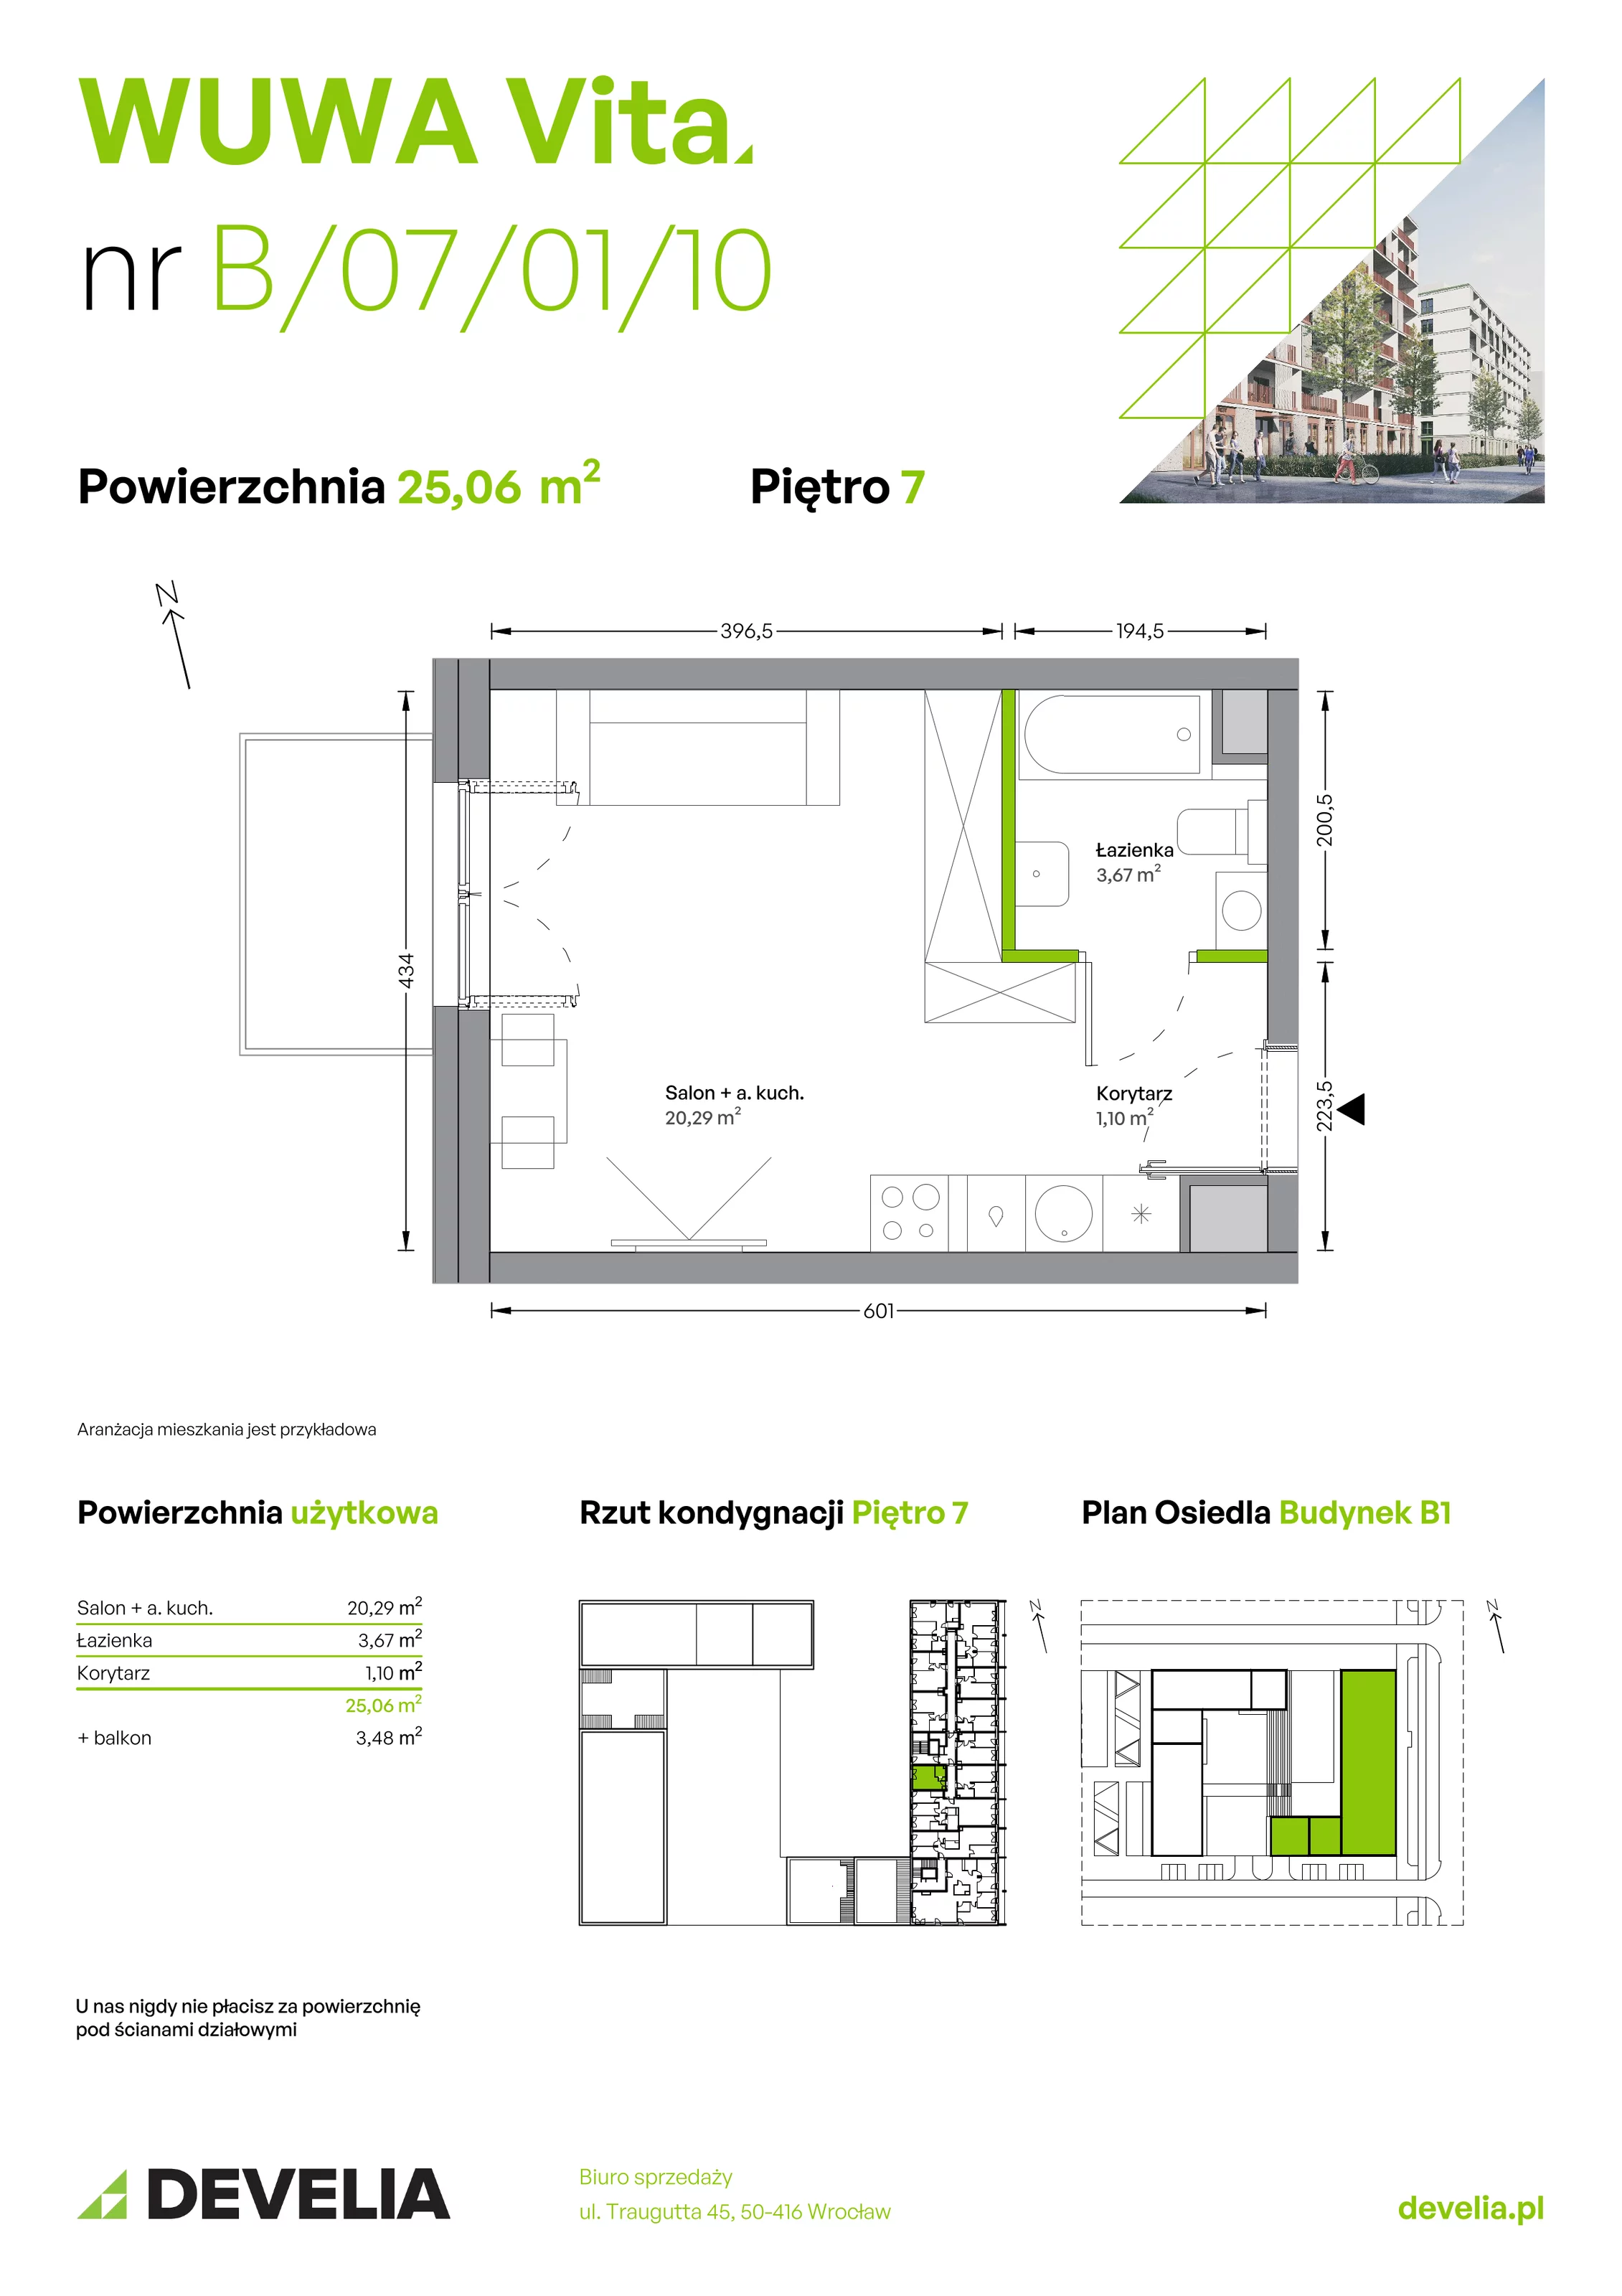 Mieszkanie 25,06 m², piętro 7, oferta nr B.07.01.10, WUWA Vita, Wrocław, Żerniki, Fabryczna, ul. Tadeusza Brzozy